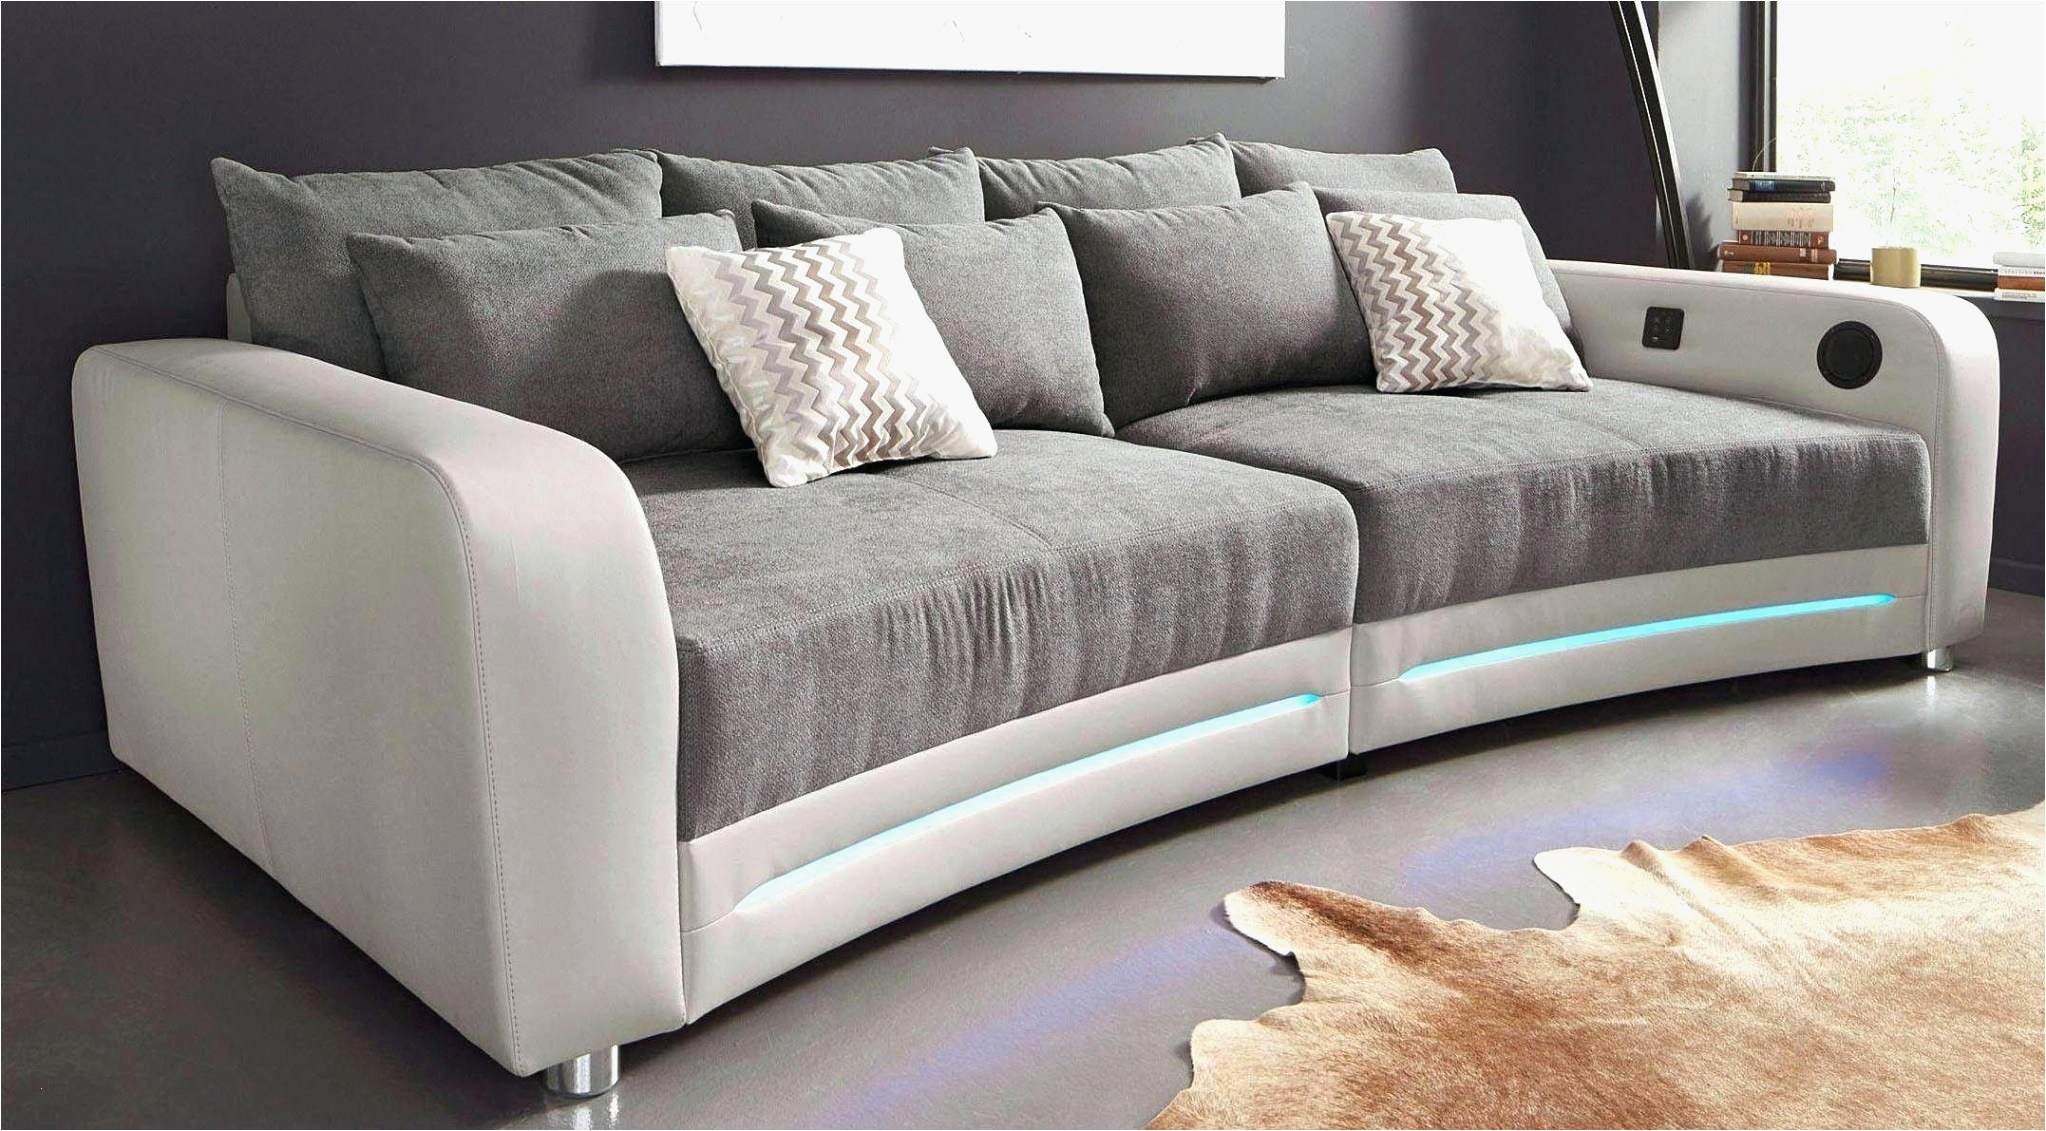 wohnzimmer couch leder elegant wohnzimmer in grau ideen der grund warum sie es versuchen of wohnzimmer couch leder